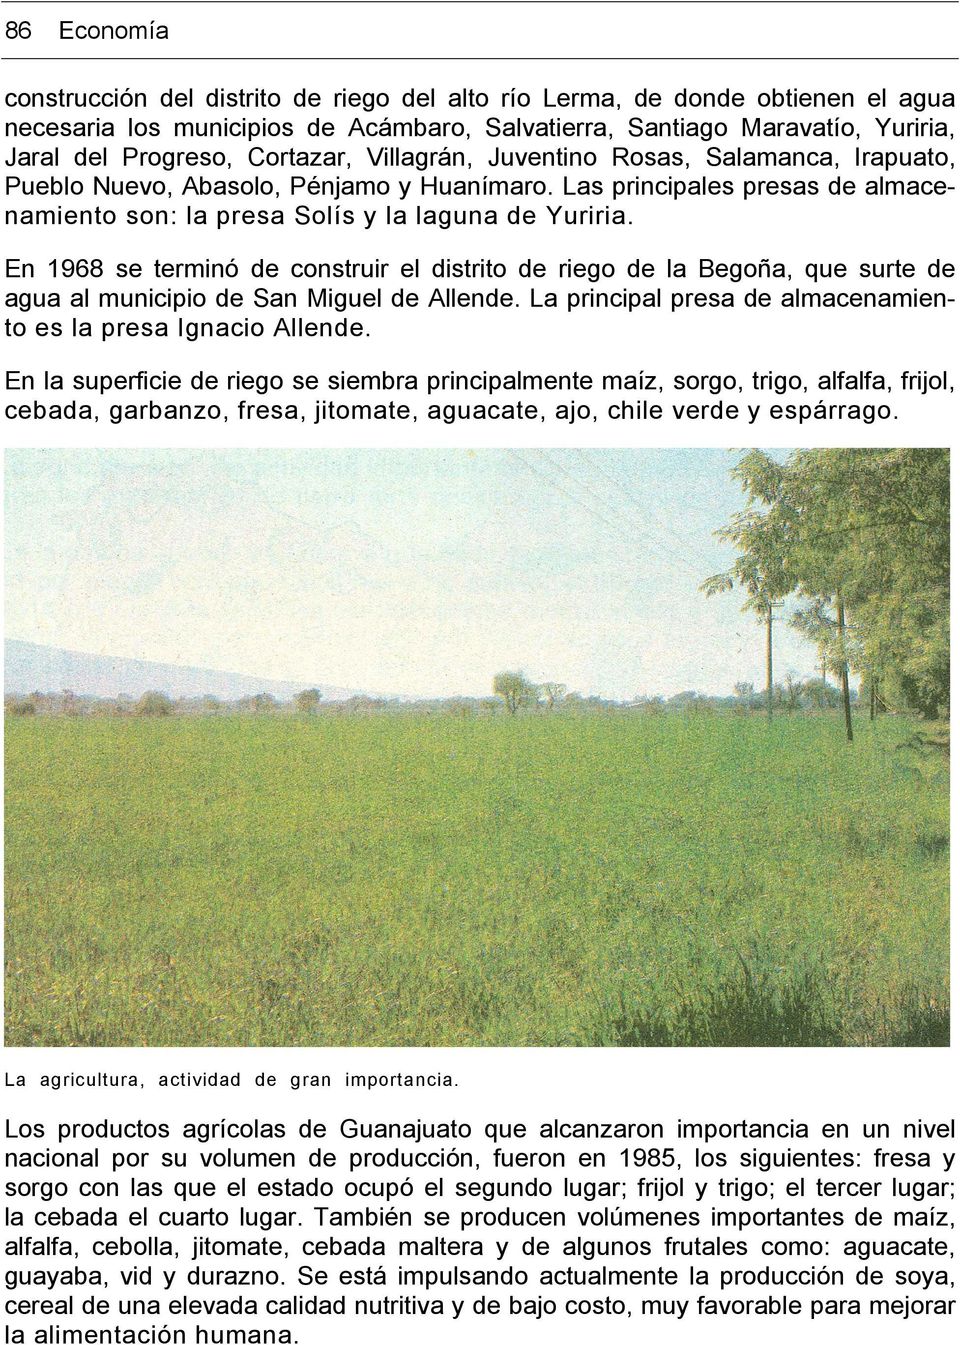 En 1968 se terminó de construir el distrito de riego de la Begoña, que surte de agua al municipio de San Miguel de Allende. La principal presa de almacenamiento es la presa Ignacio Allende.